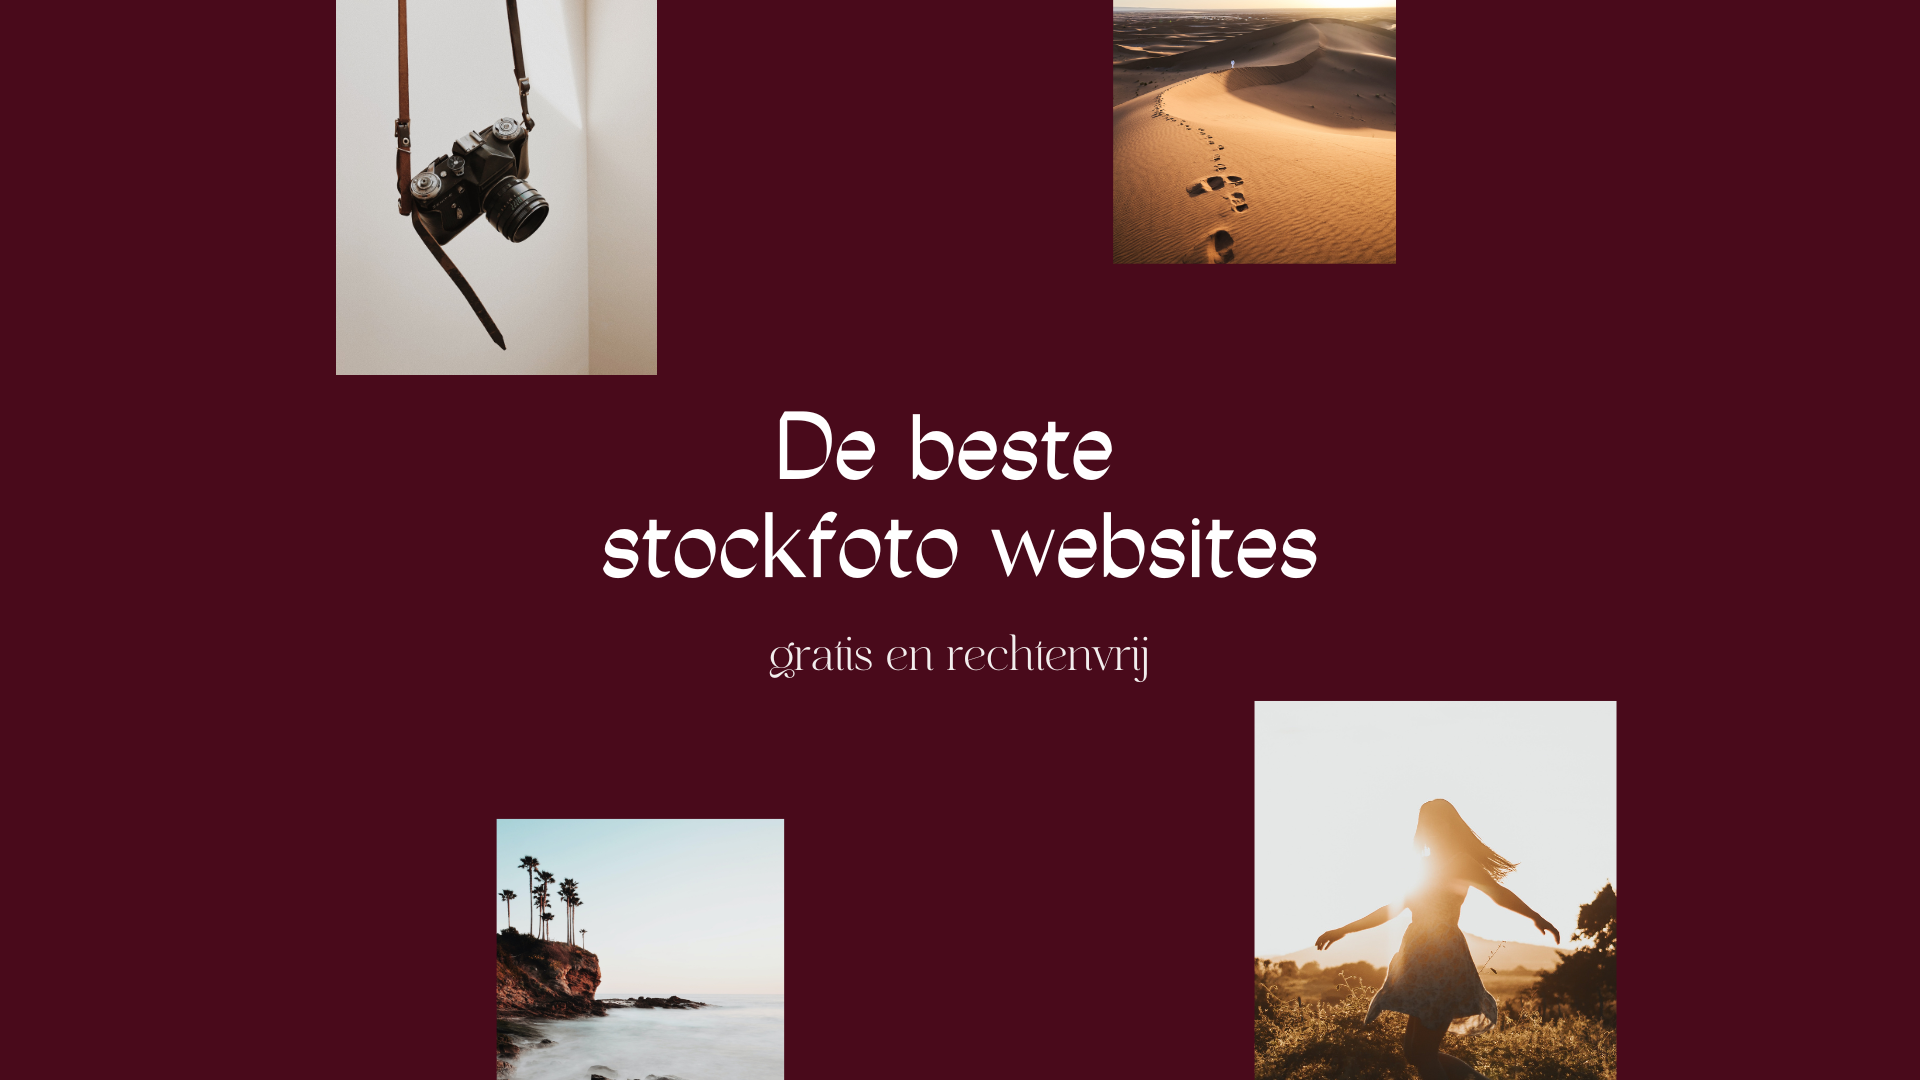 websites voor gratis stockfoto's